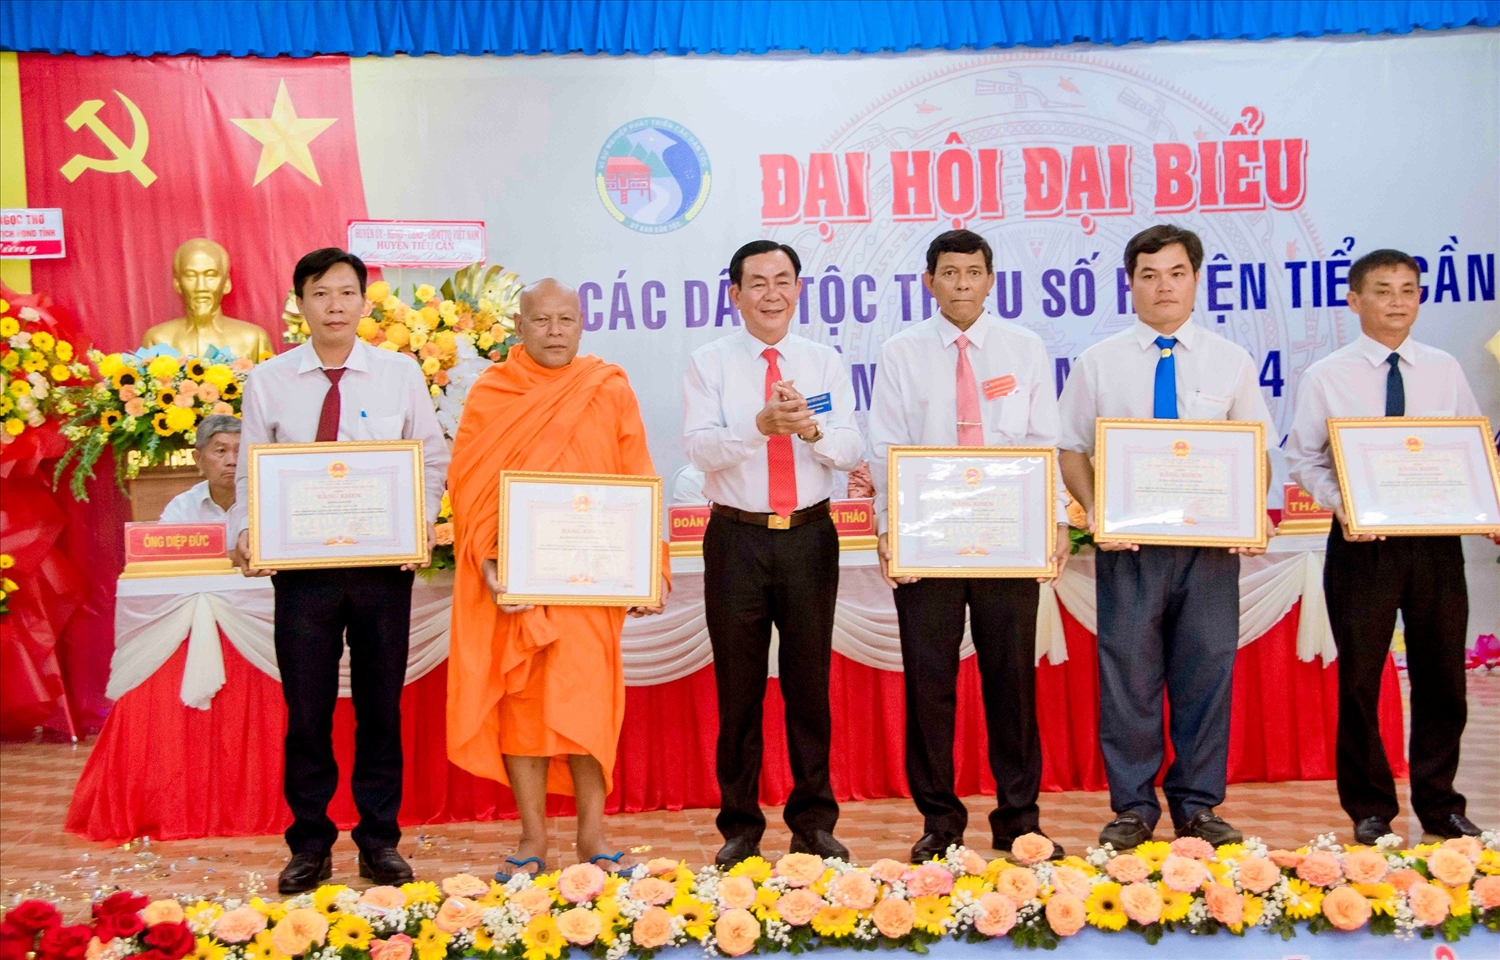 Ông Lê Thanh Bình, Phó Chủ tịch UBND tỉnh trao bằng của Chủ tịch UBND tỉnh đến các Tập thể đã có thành tích xuất sắc trong thực hiện chính sách dân tộc và có nhiều đóng góp trong phát triển kinh tế - xã hội, quốc phòng - an ninh đối với vùng đồng bào DTTS